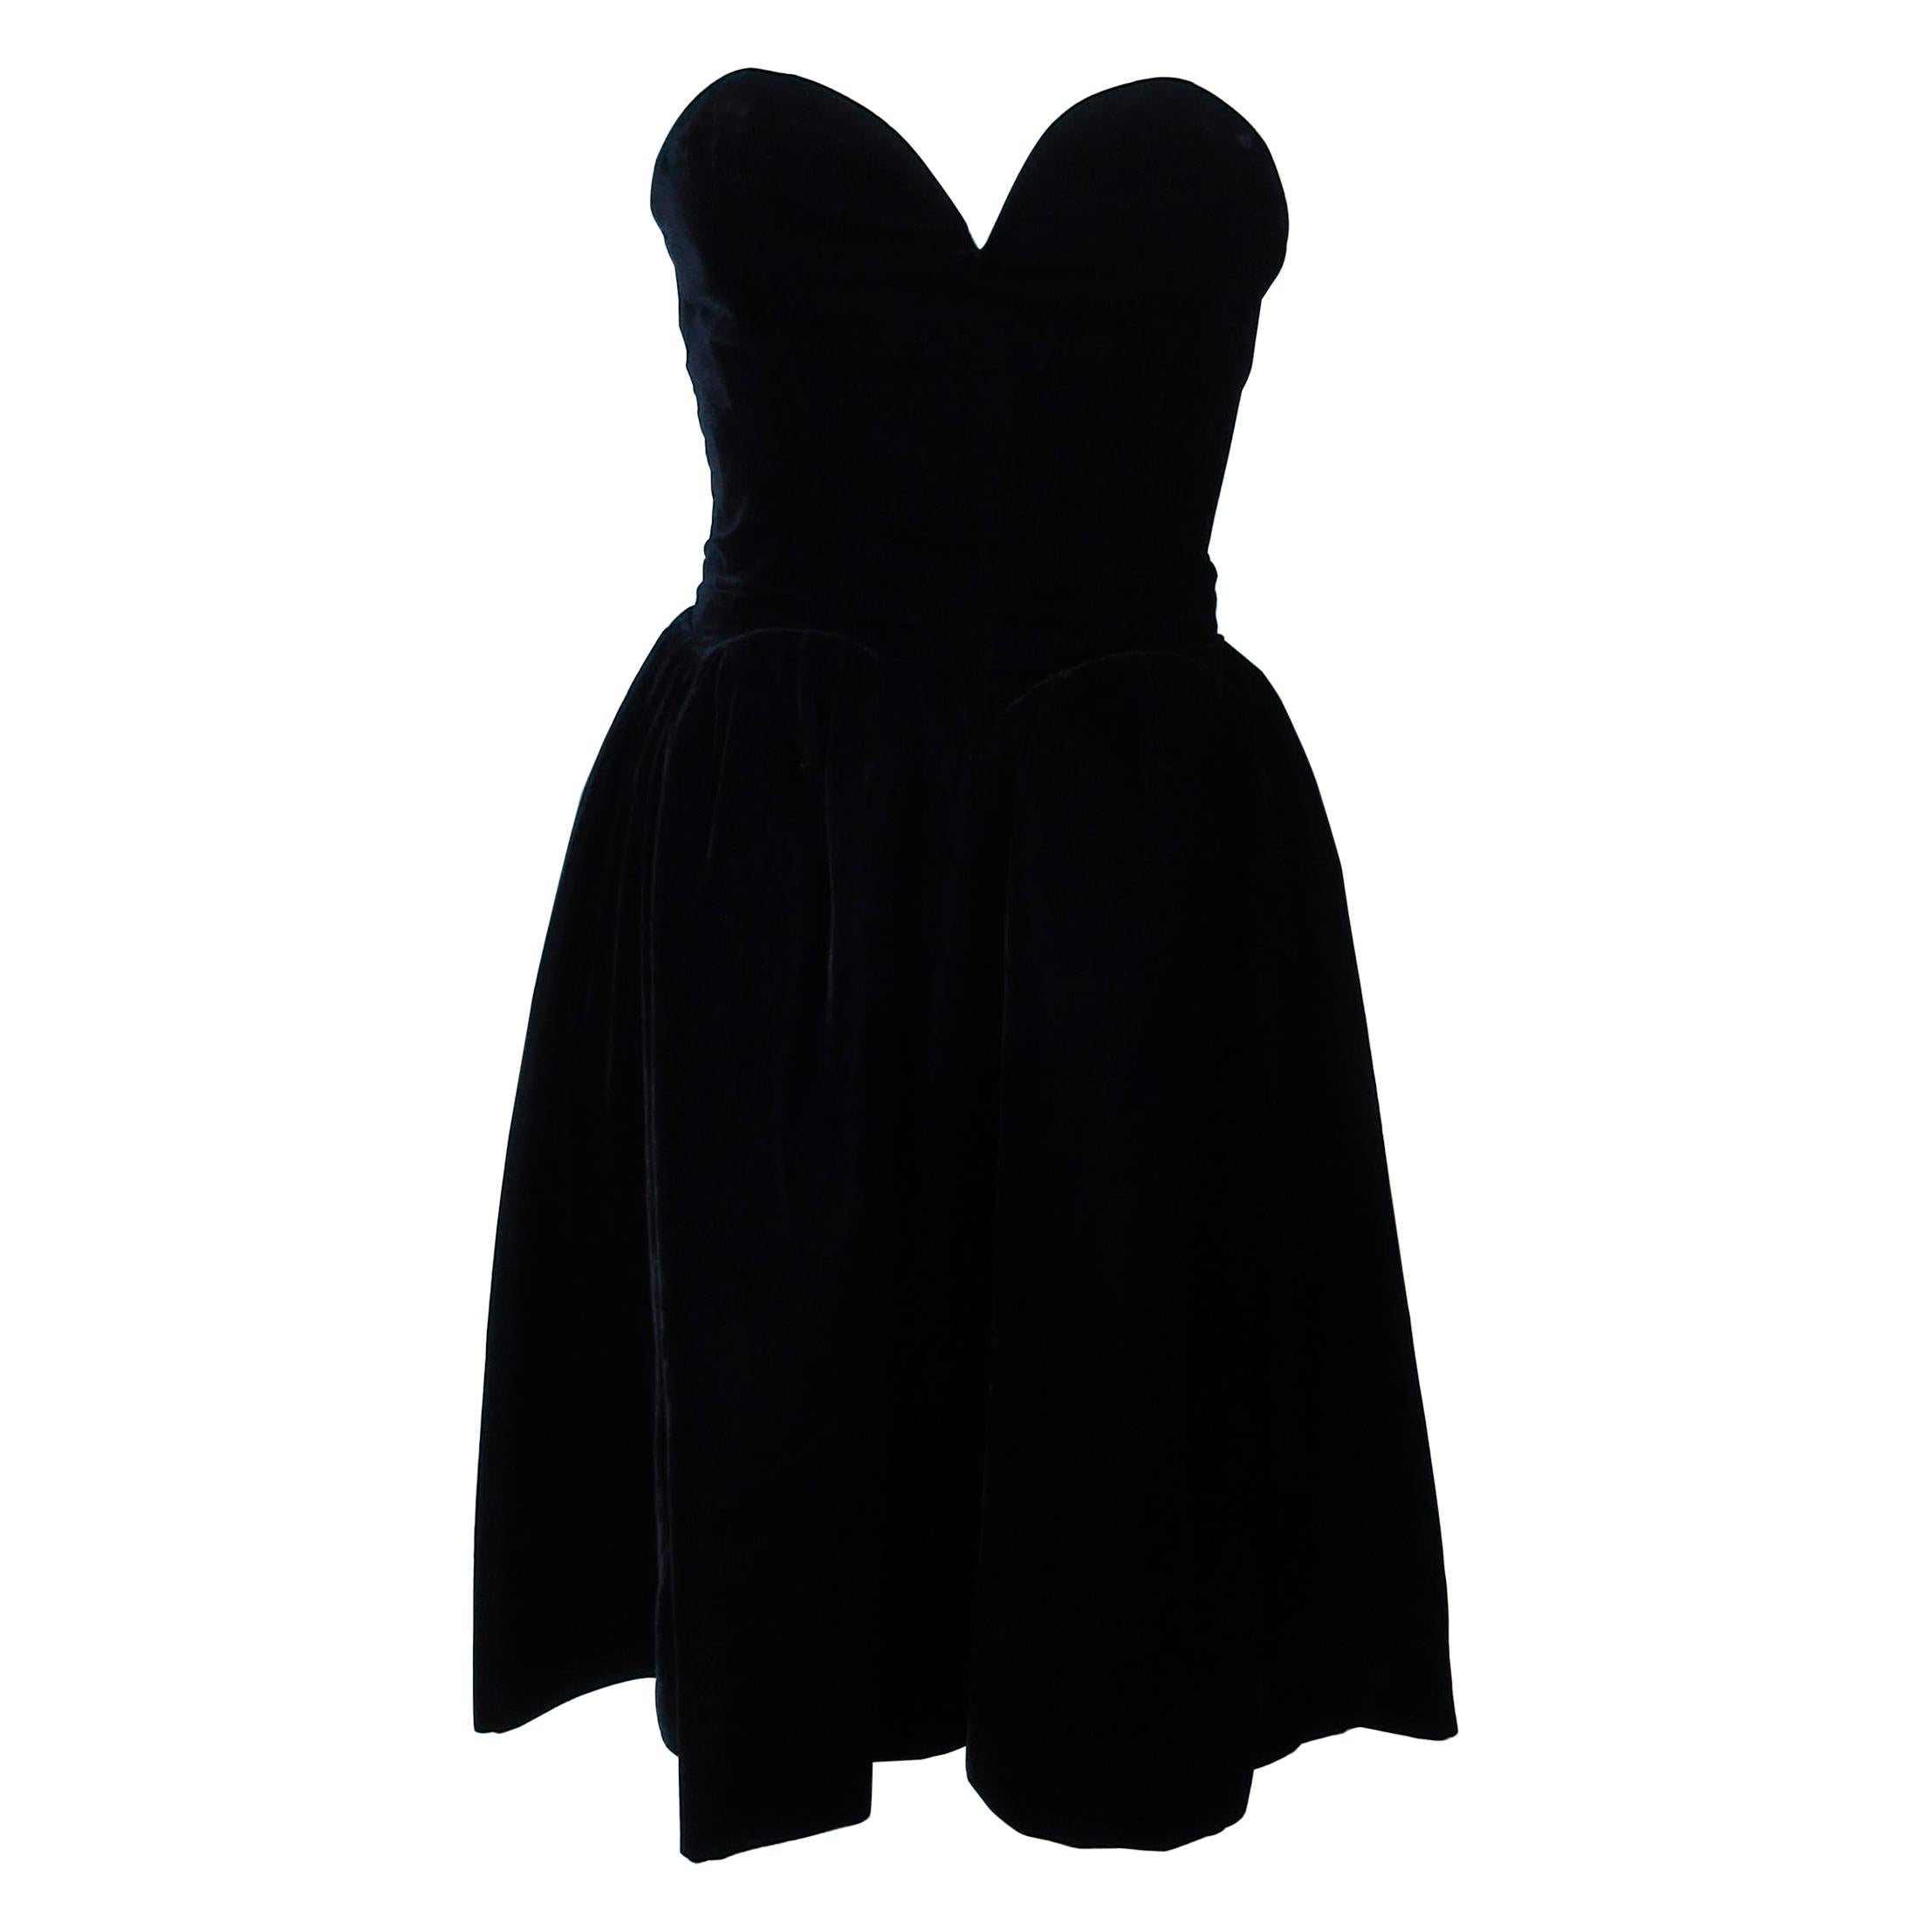 YVES SAINT LAURENT Black Velvet Cocktail Dress with Full Skirt Size 38 For Sale